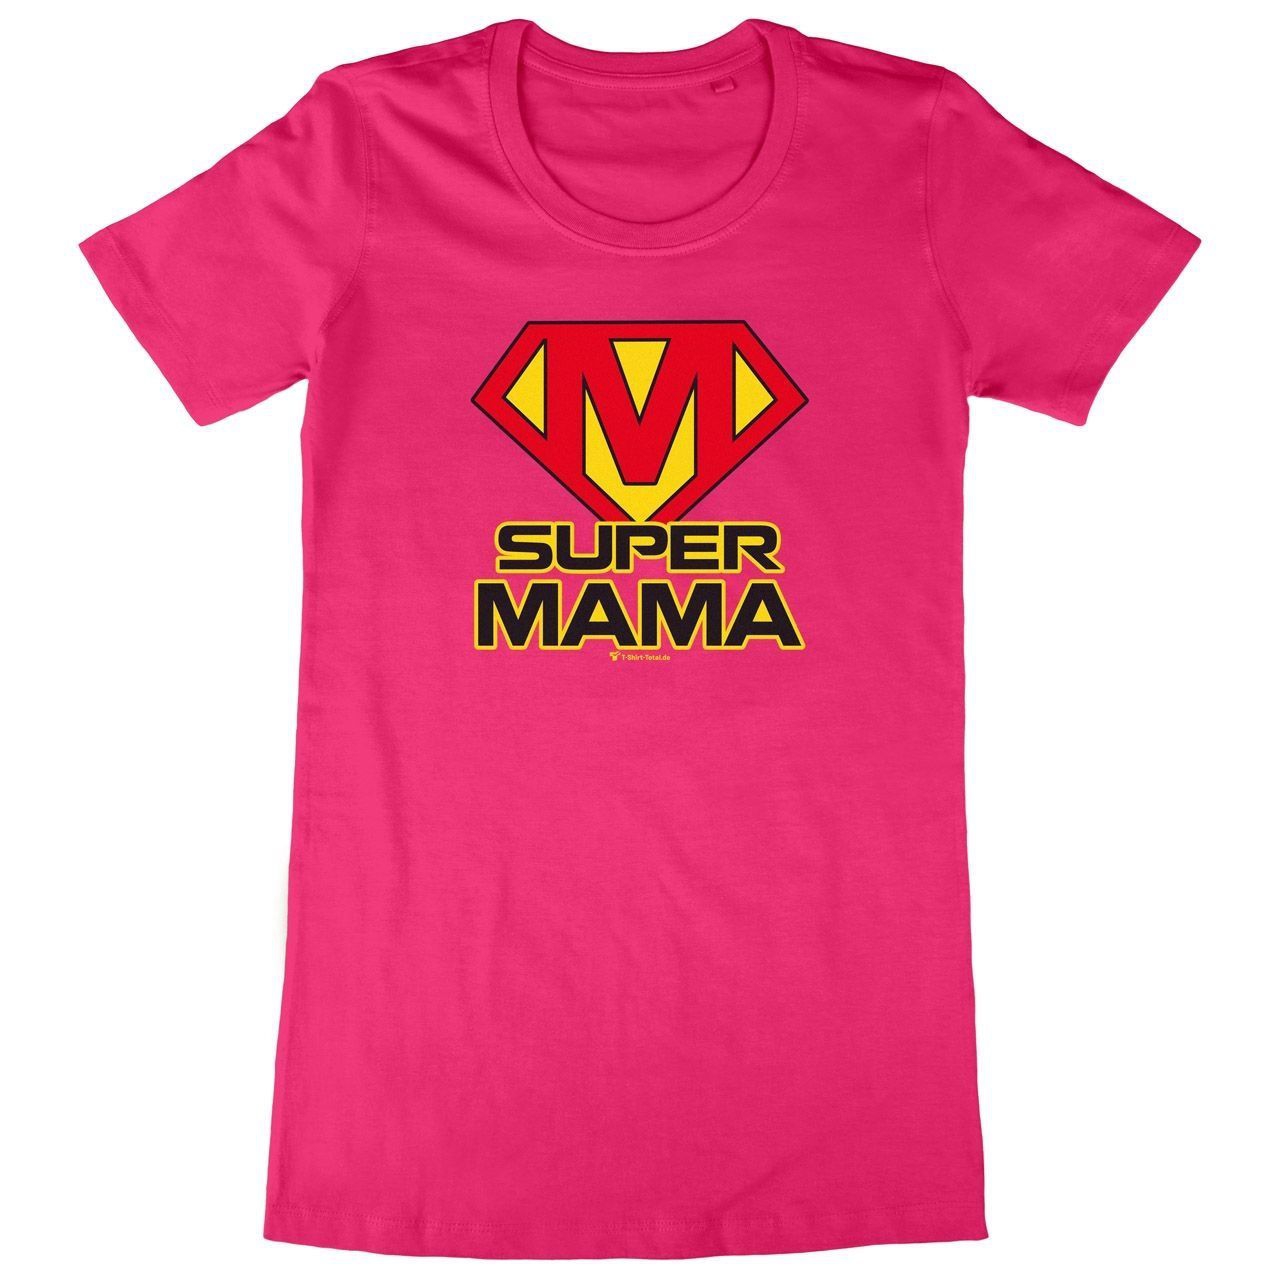 Super Mama Woman Long Shirt pink Small